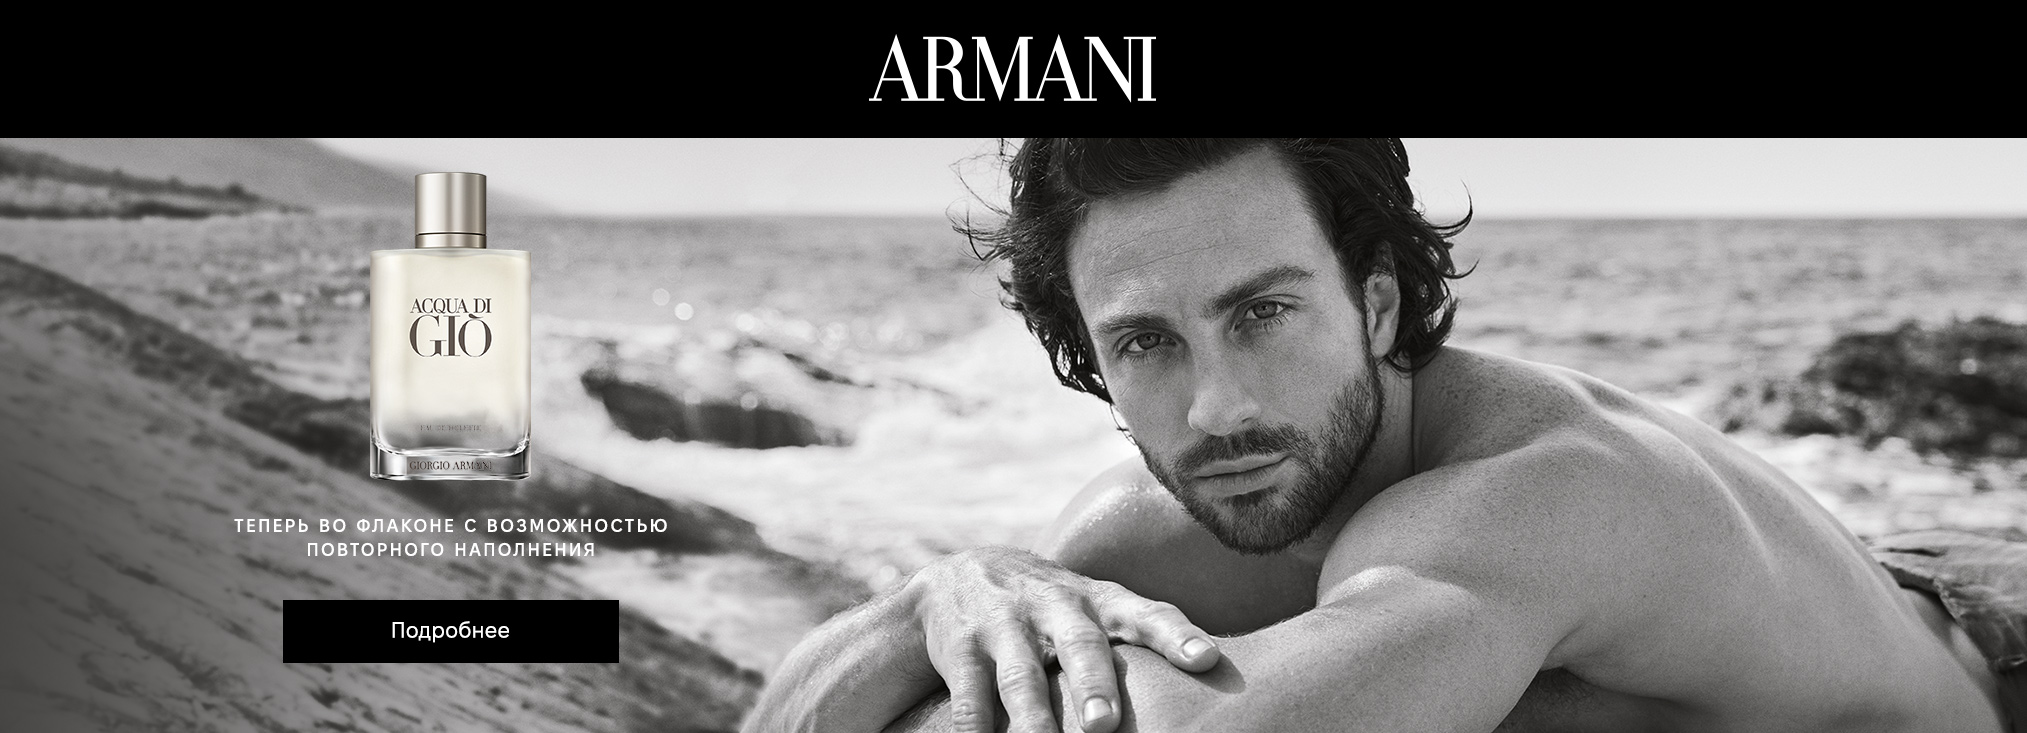 Giorgio Armani Brand Page